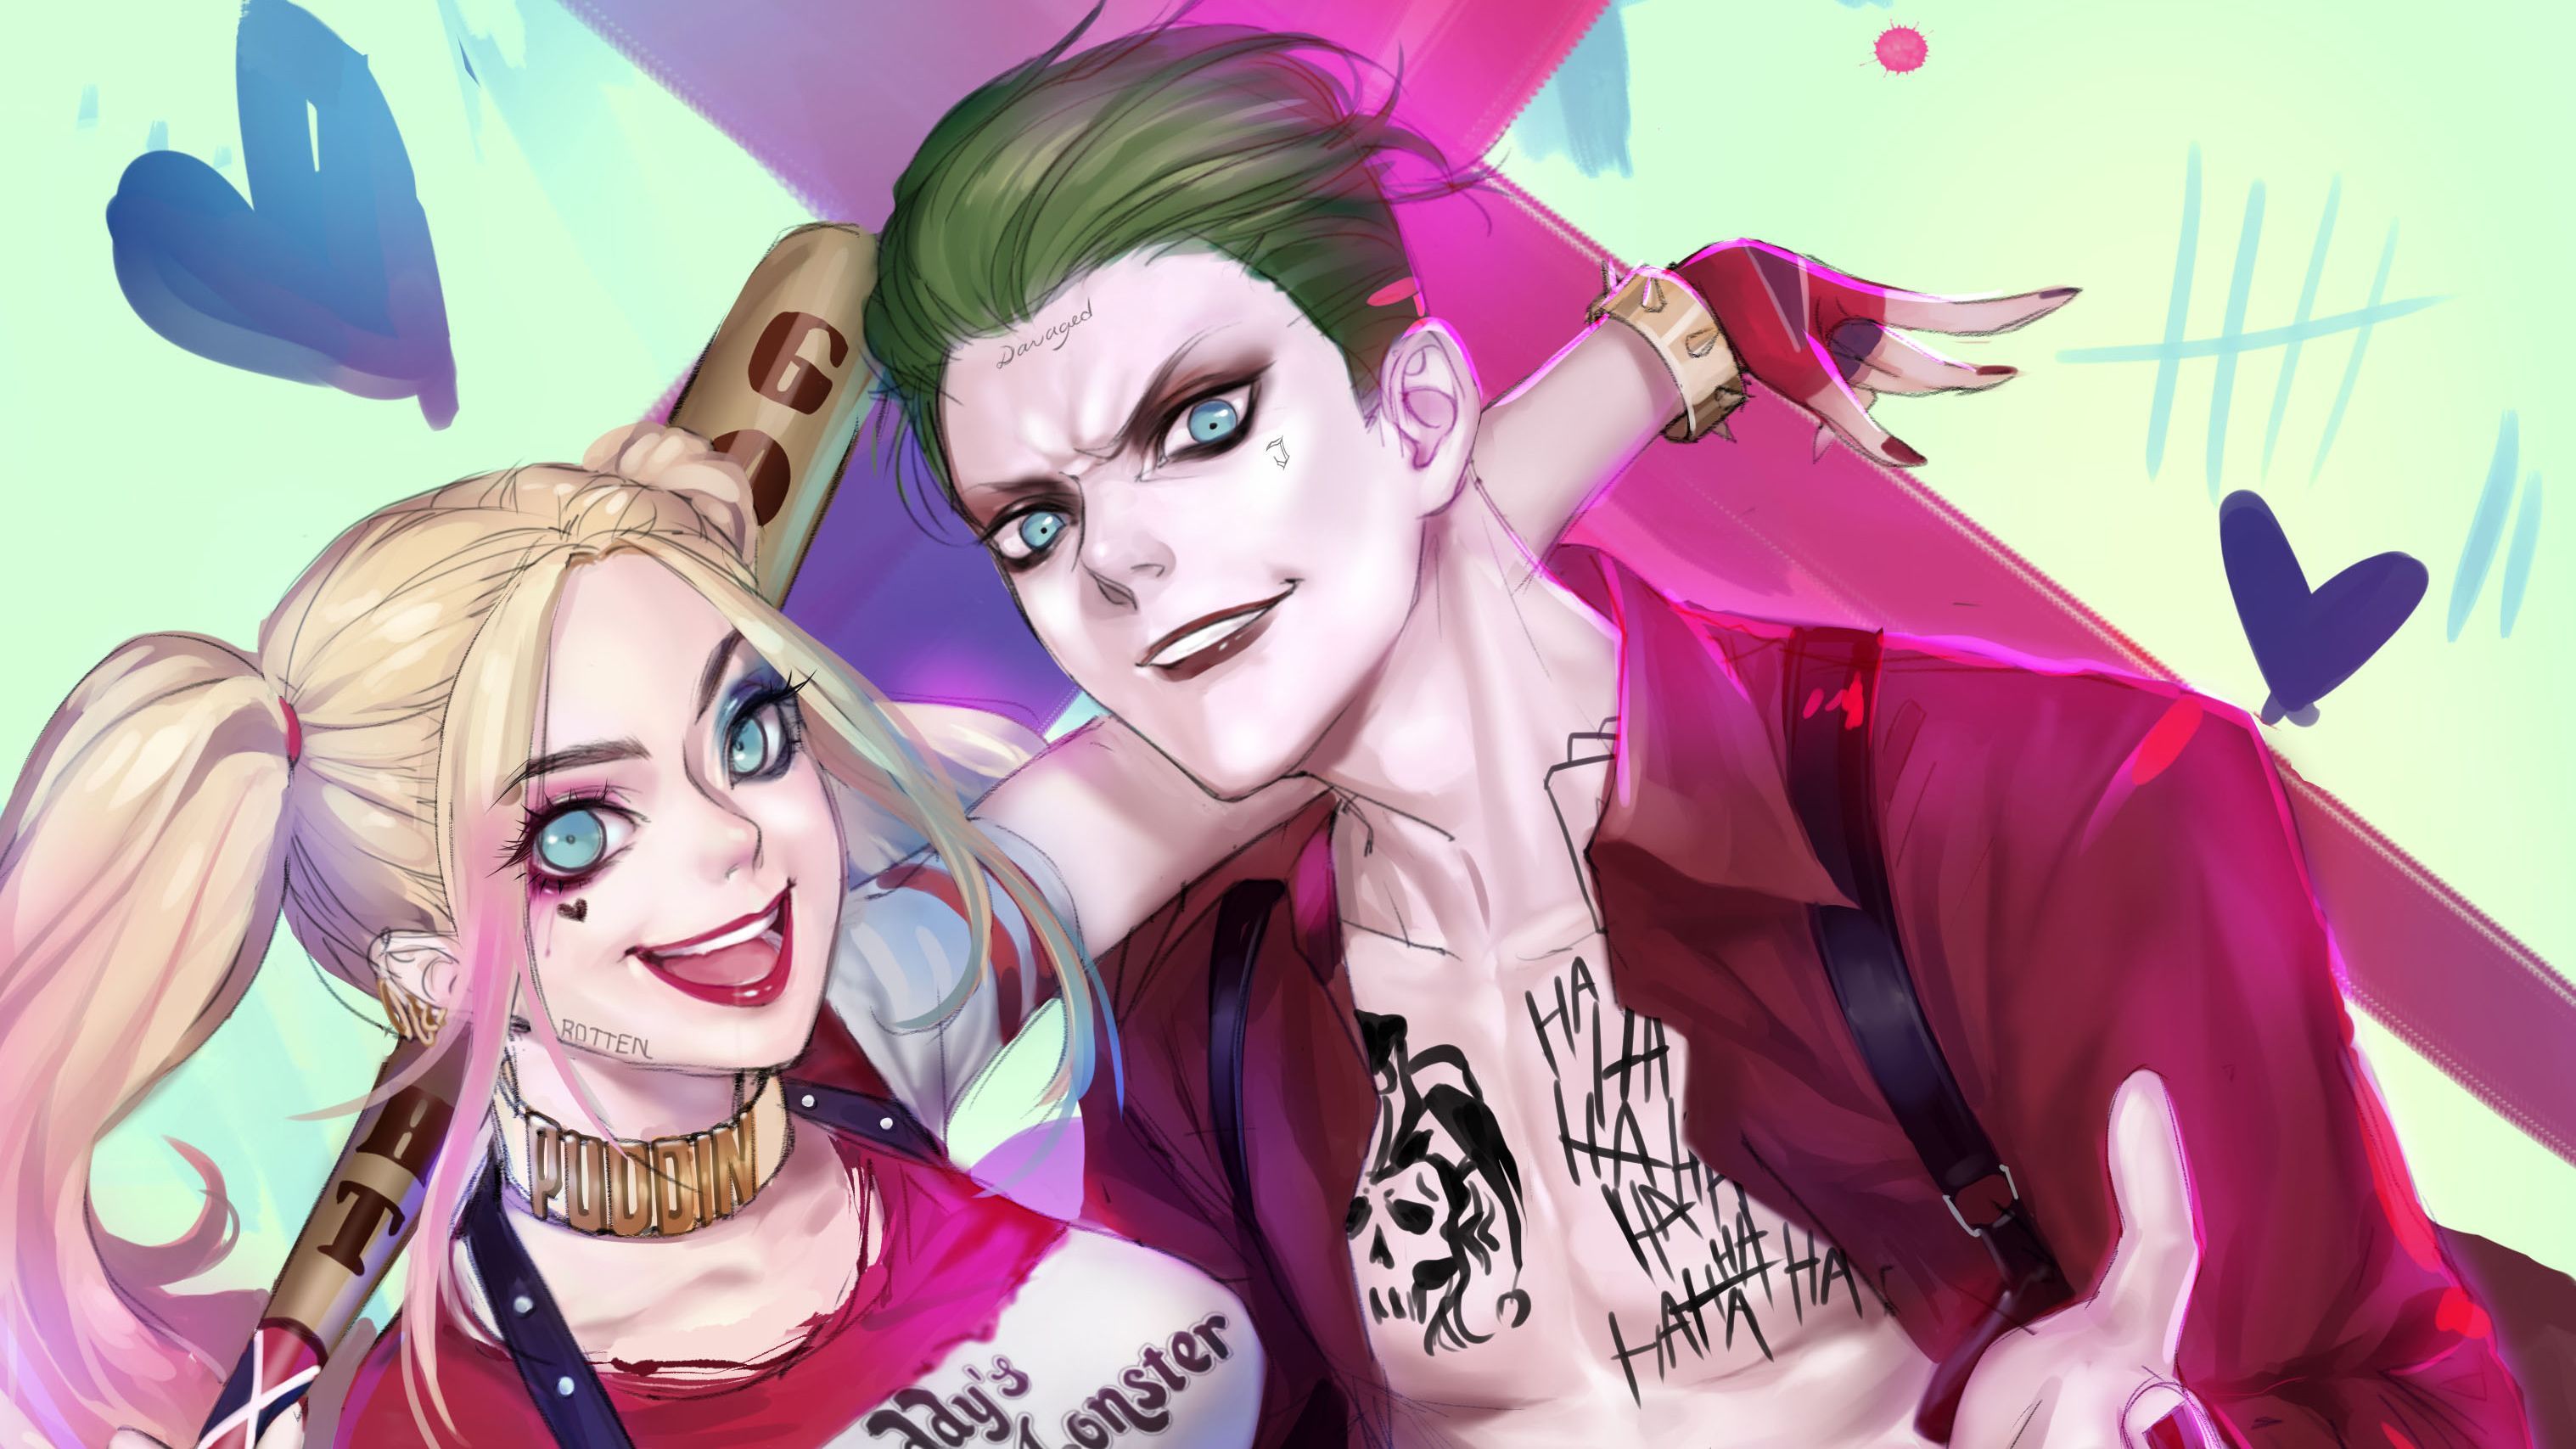 Anime Harley Quinn and Joker Wallpaper Free Anime Harley Quinn and Joker Background